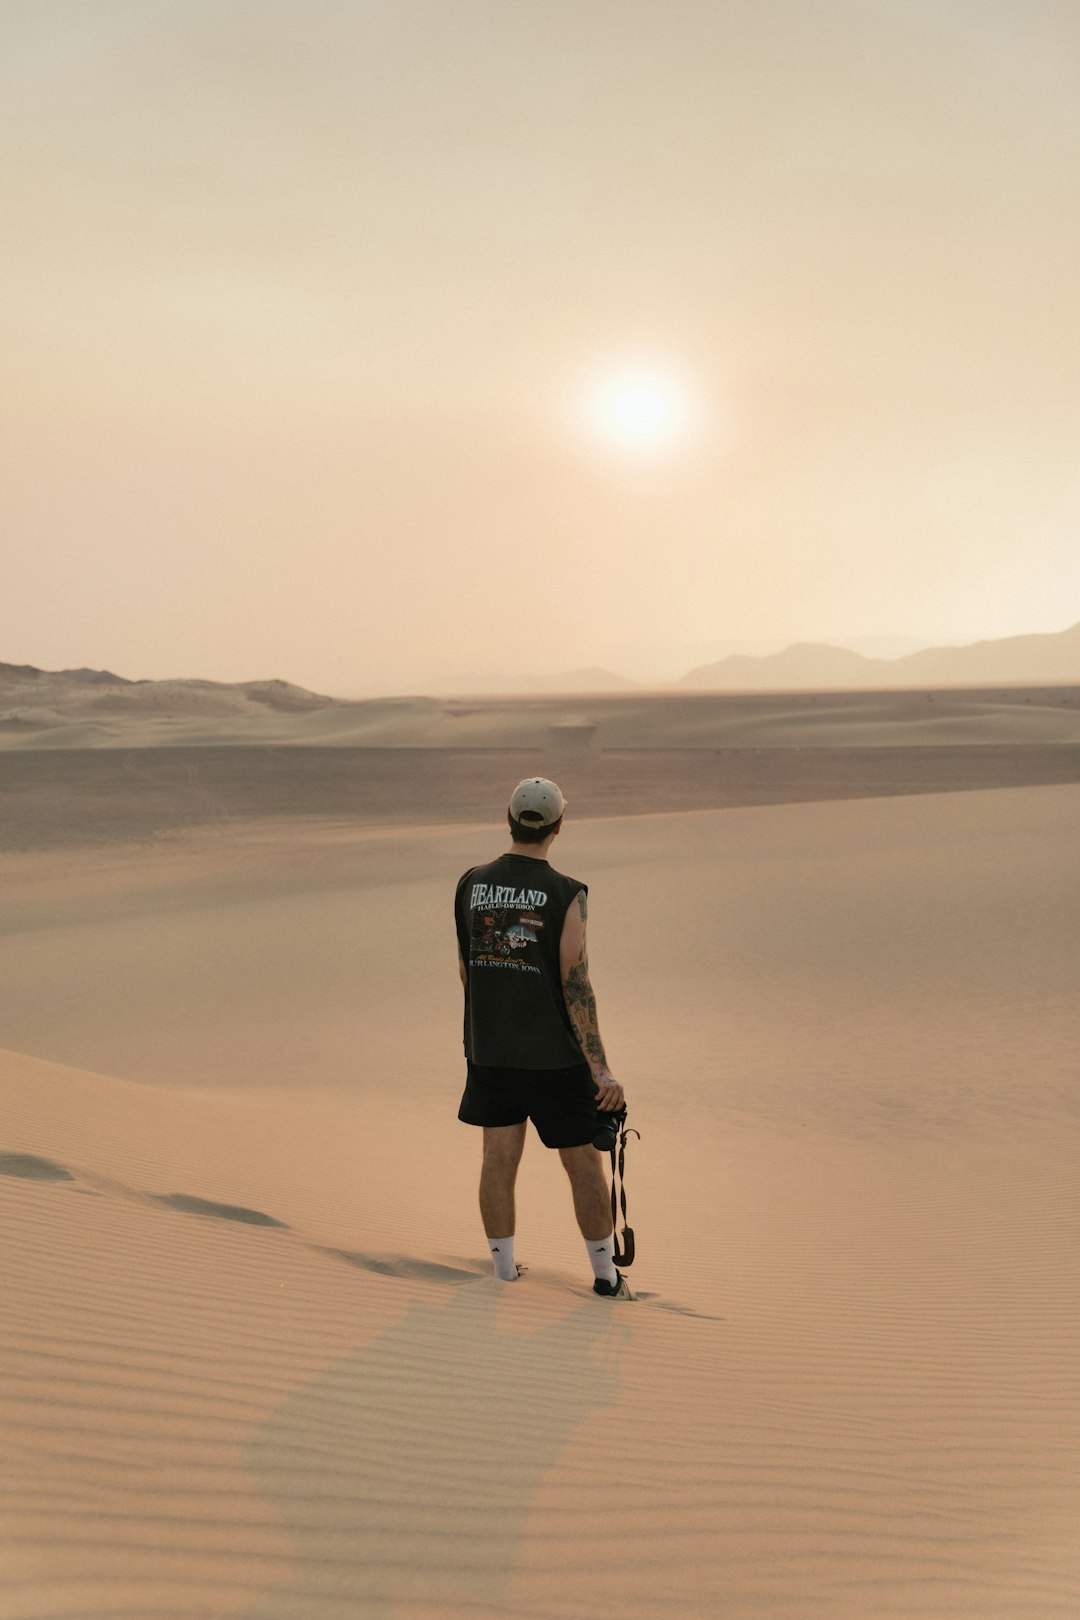 man in black t-shirt and black shorts walking on desert during daytime